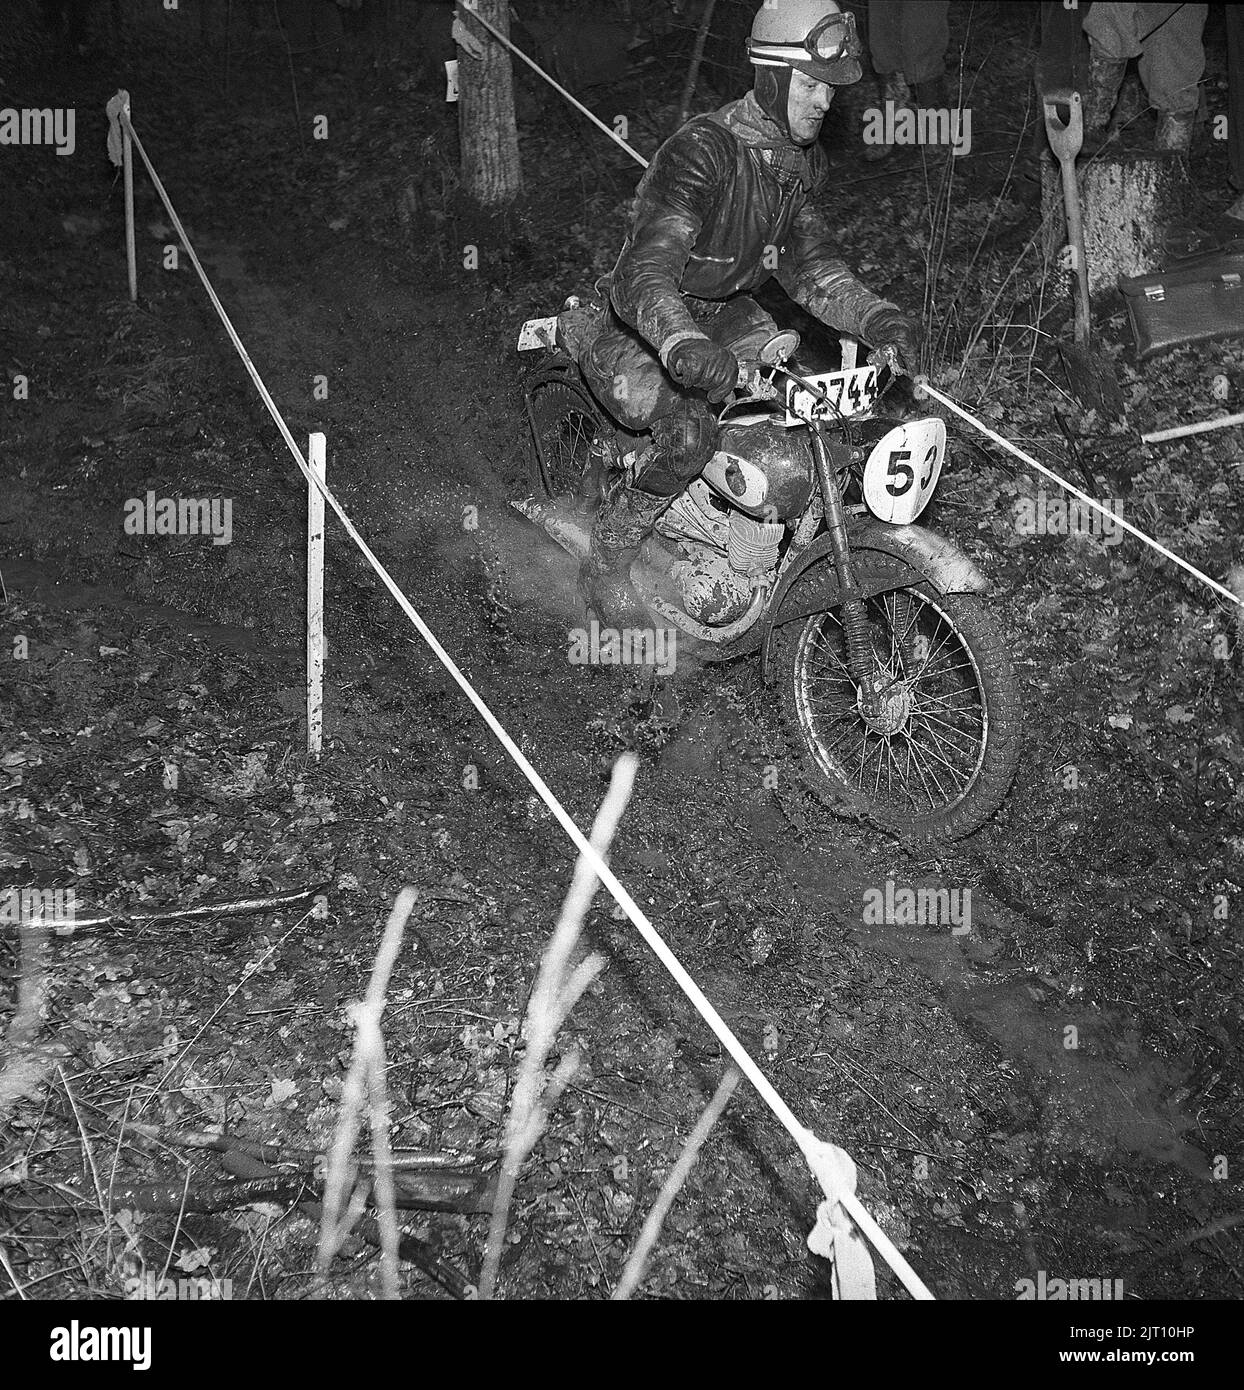 Motociclista nel 1950s. Un uomo che indossa la sua moto durante una gara notturna in cui la pista è nella natura con fango e acqua. Svezia 1951 Kristoffersson Ref BE73-1 Foto Stock